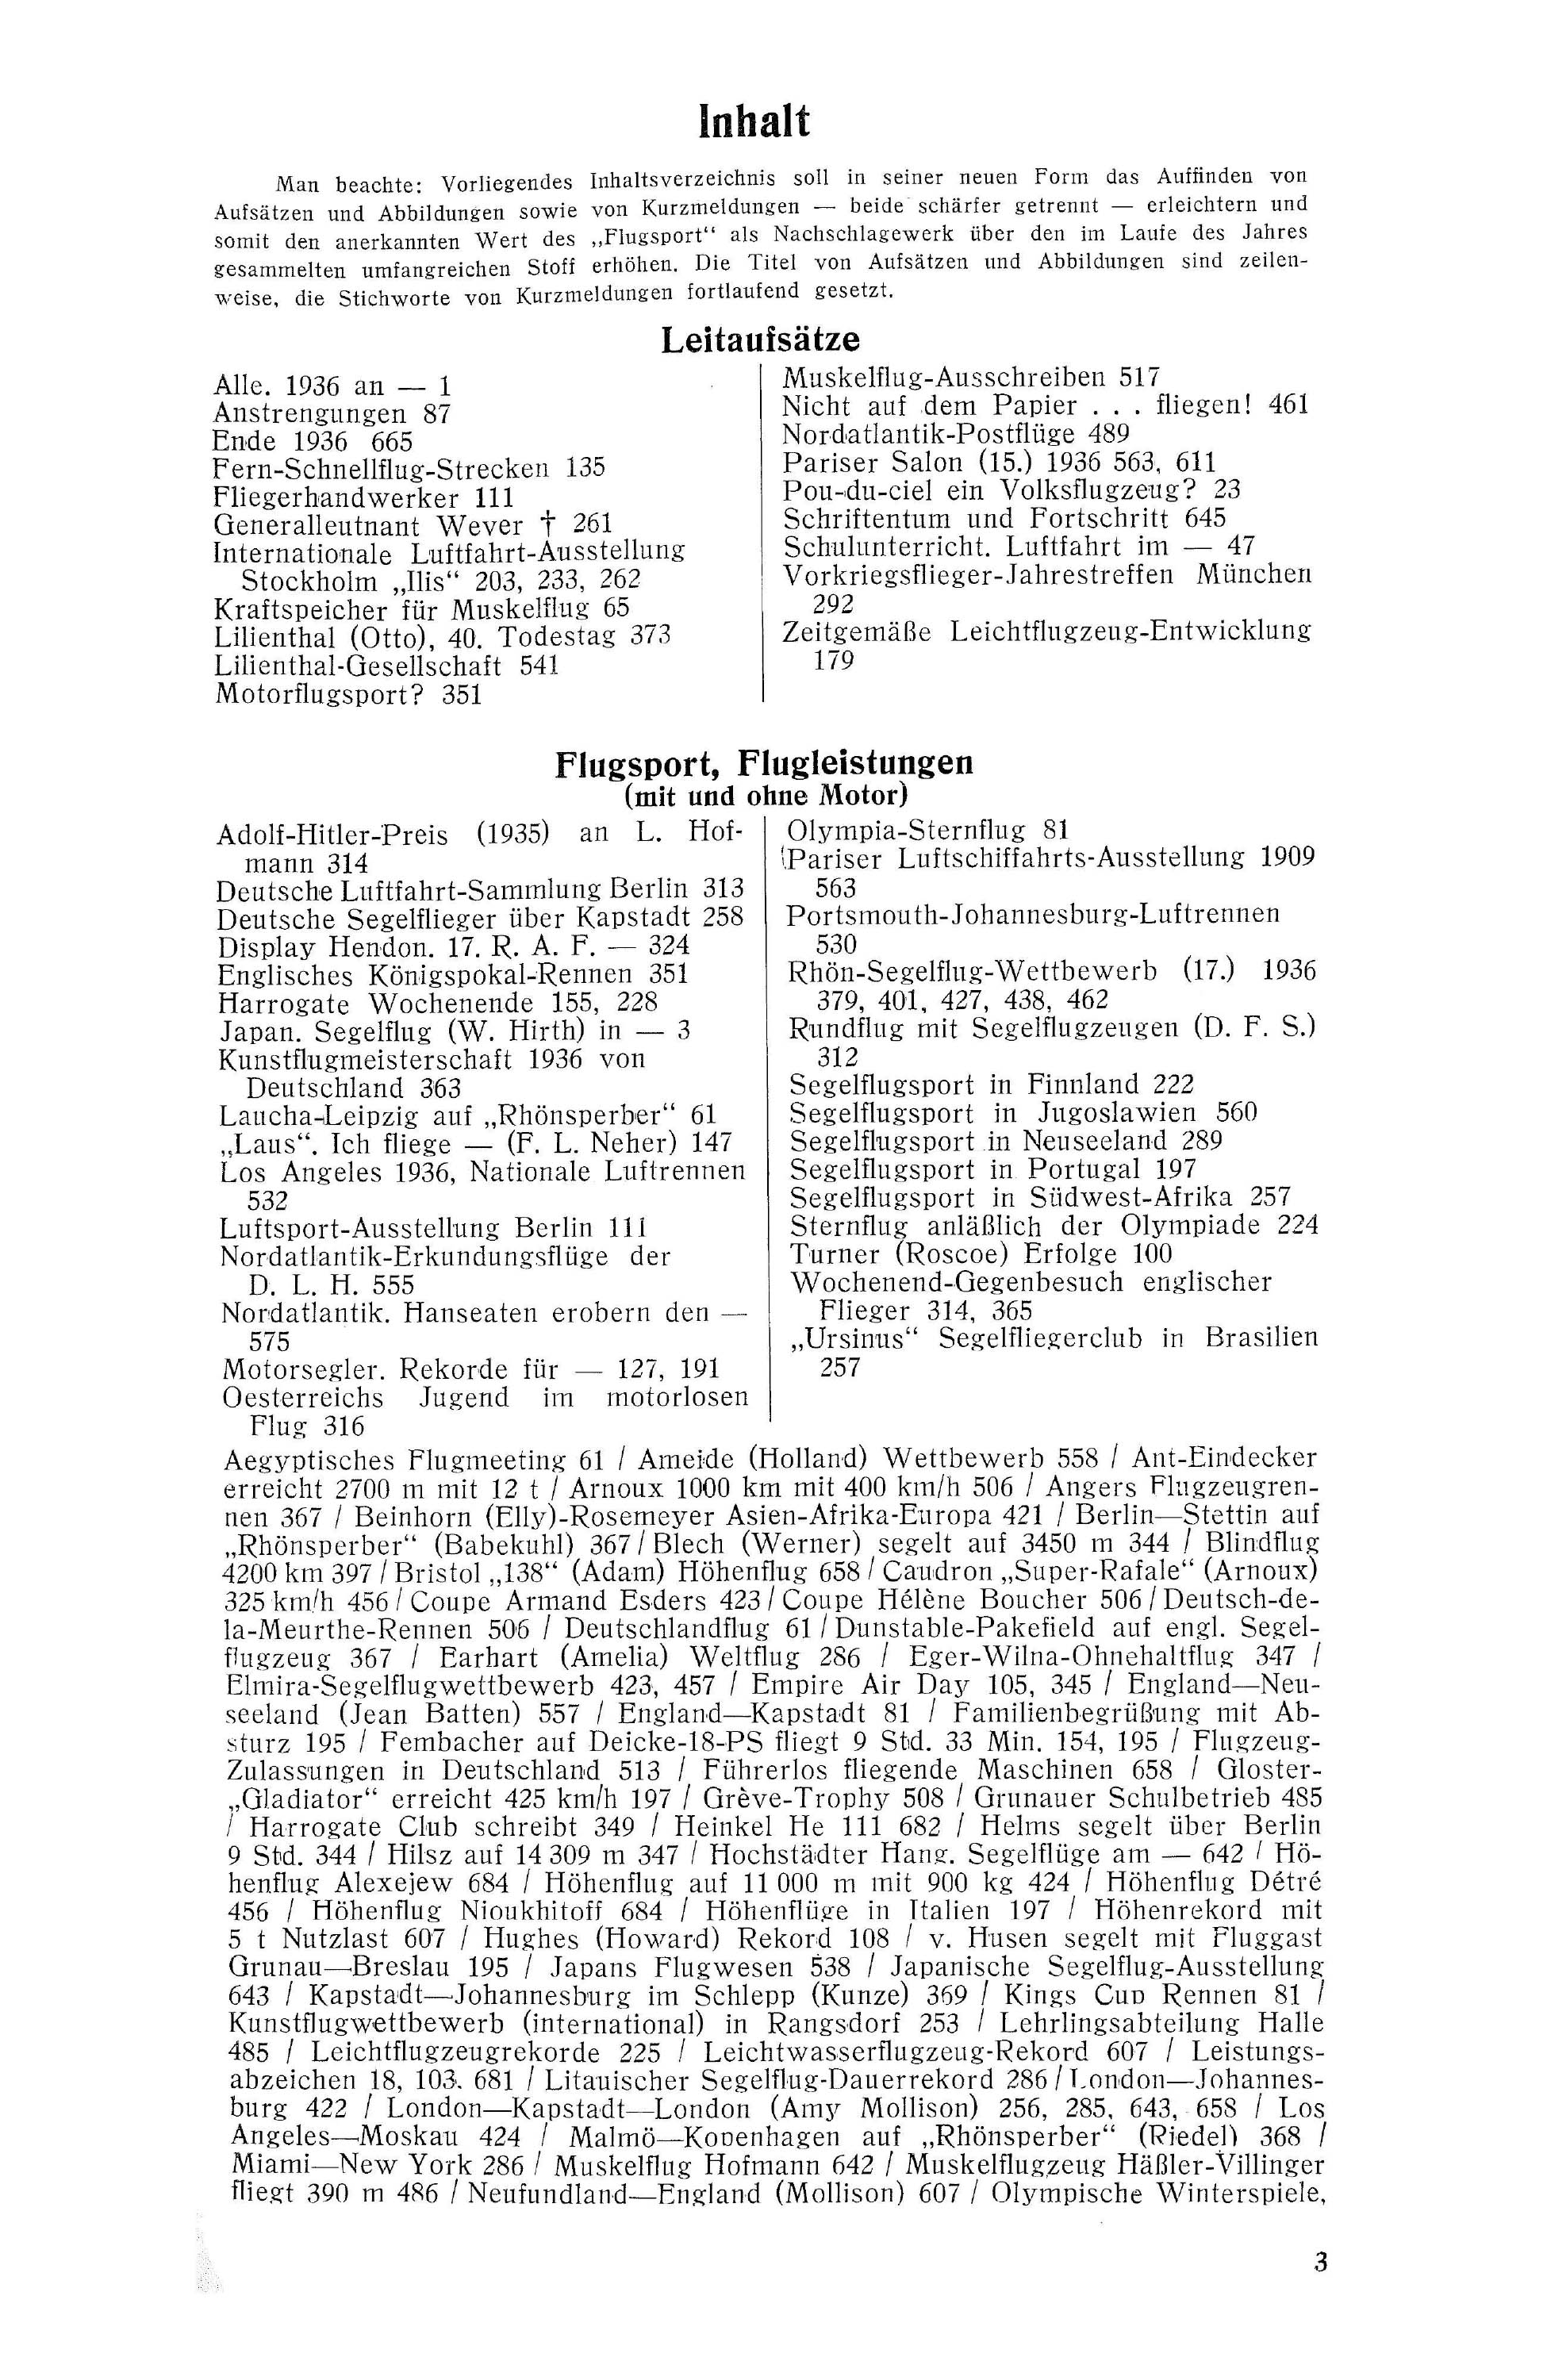 Sachregister und Inhaltsverzeichnis der Zeitschrift Flugsport 1936